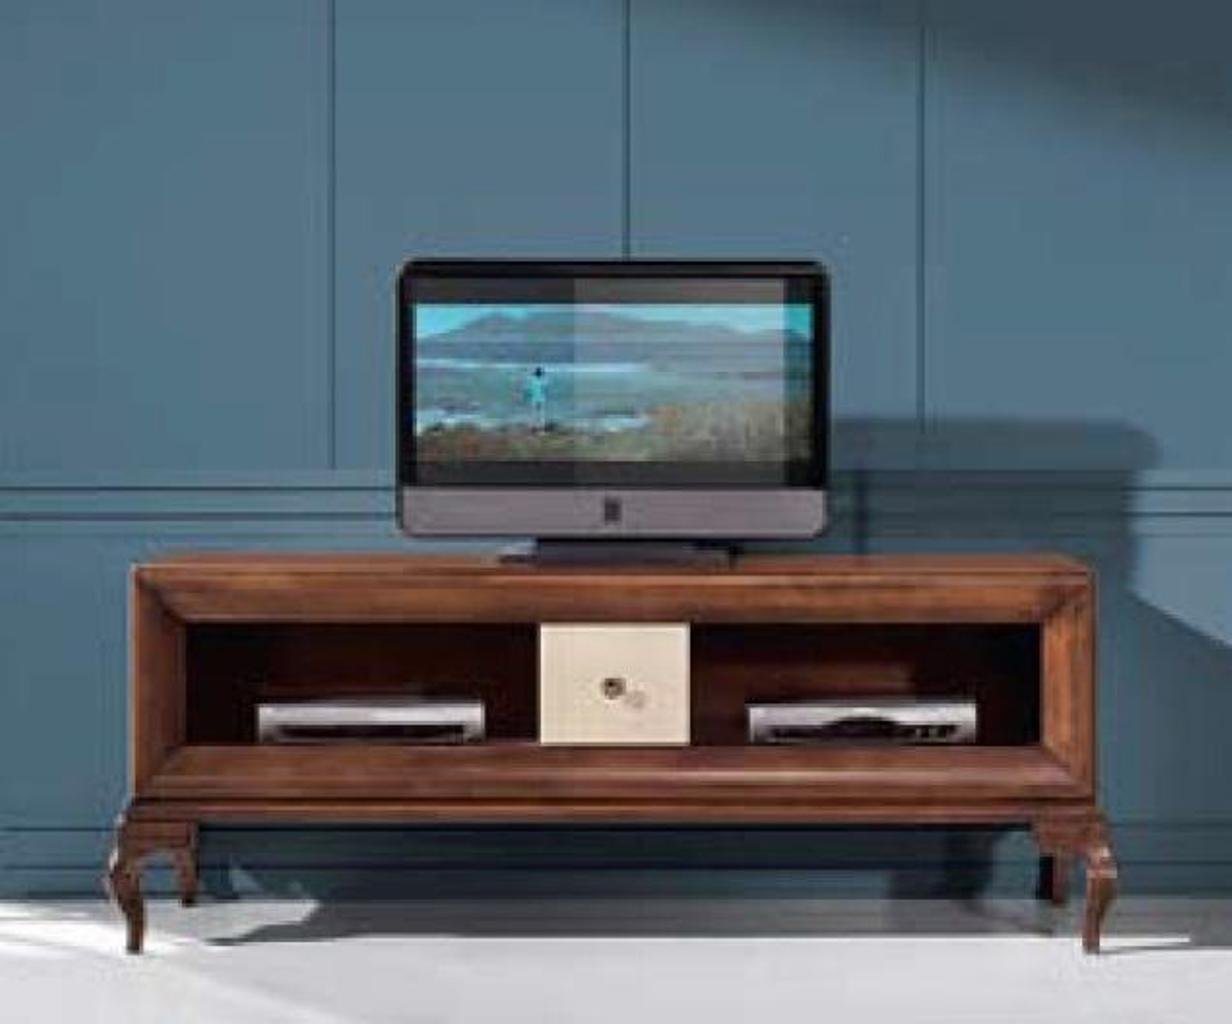 JVmoebel Lowboard, tv Ständer rtv Lowboard Sideboard Tisch Holz Wohnzimmer Braun Möbel von JVmoebel